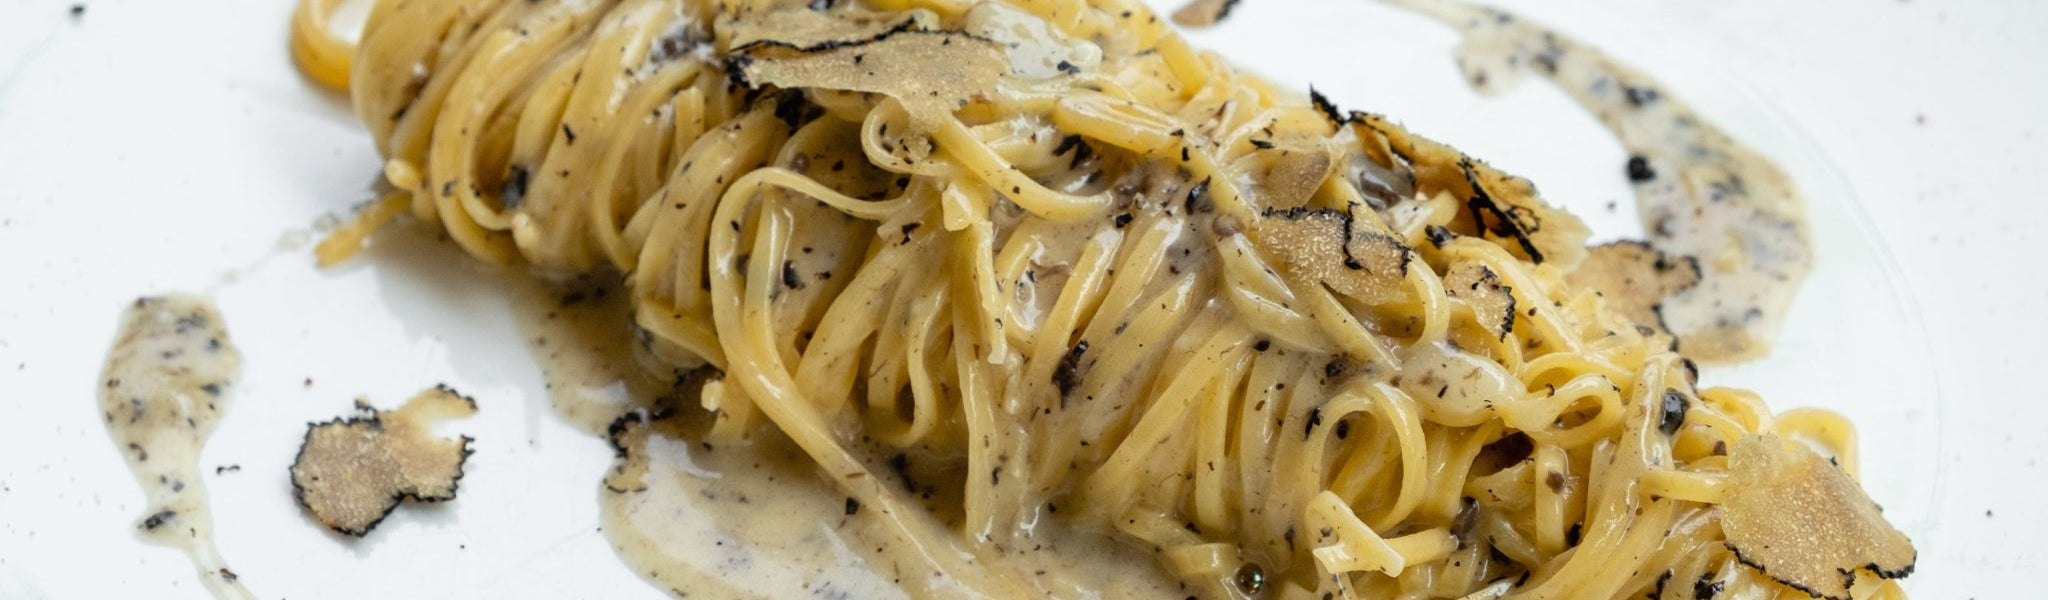 Pasta & Risotto mit Trüffel - Genussbote